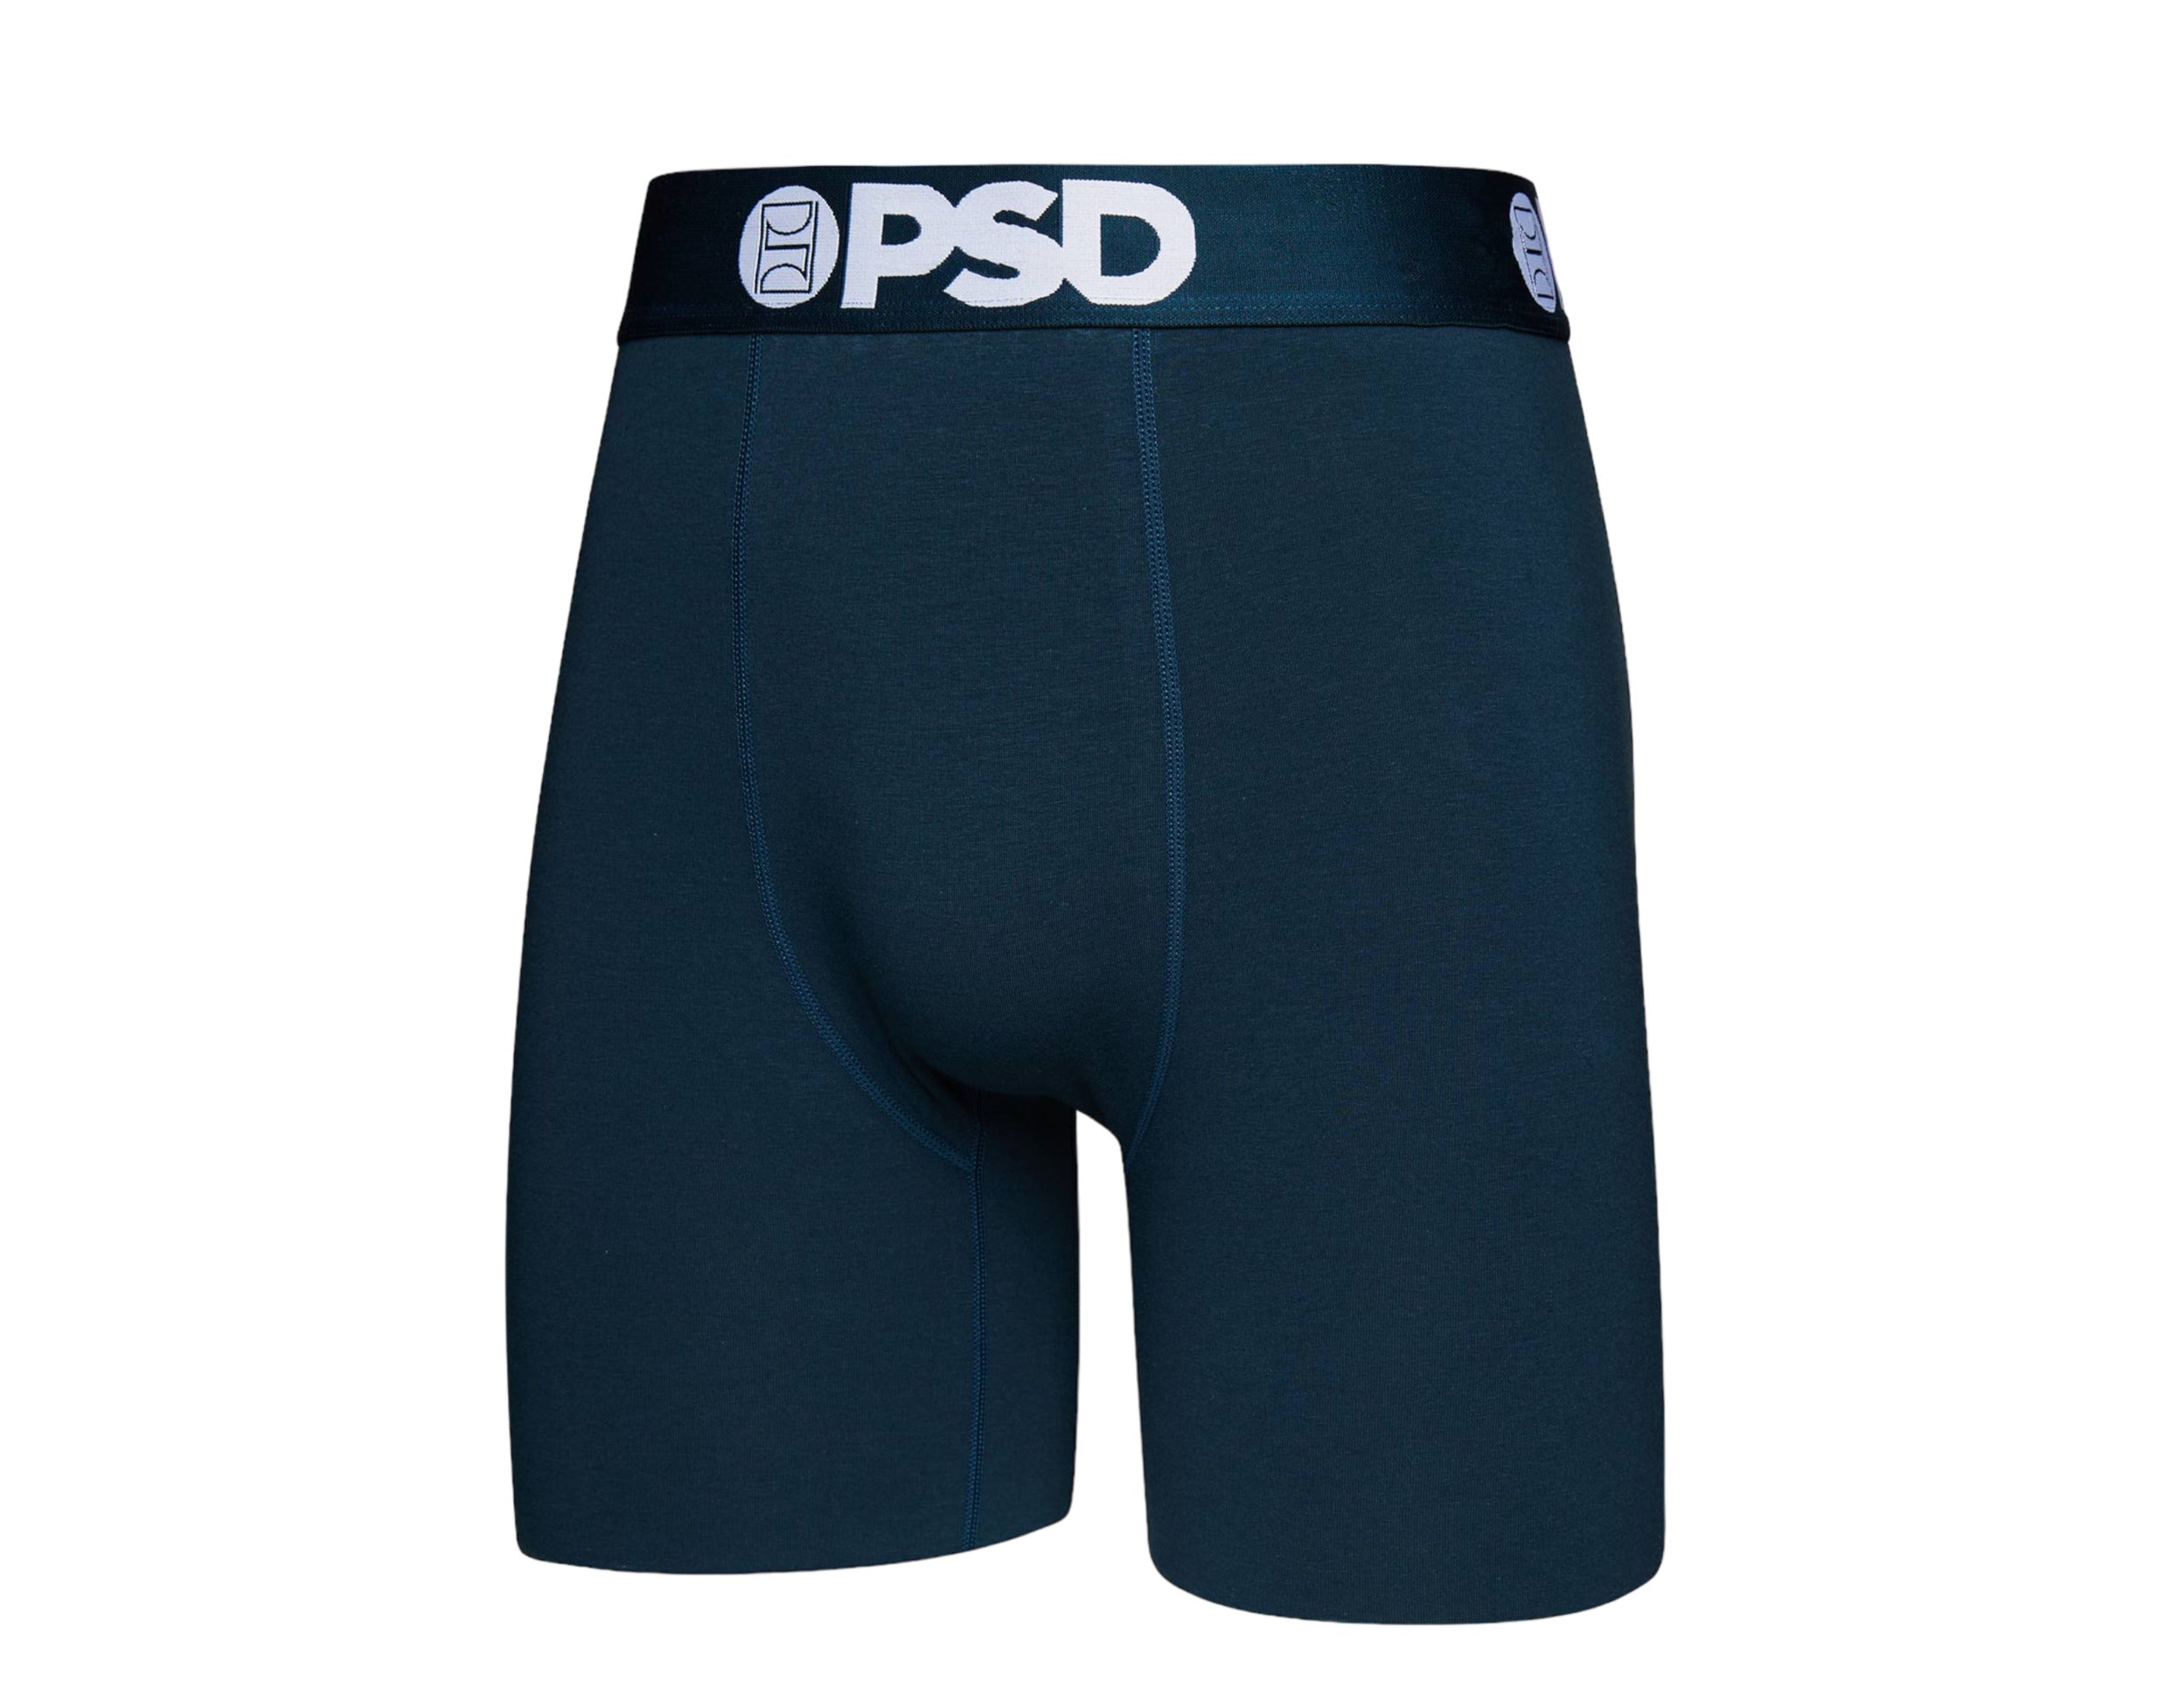 PSD Solids 7 Cotton 3-Pack Boxer Briefs Men's Underwear – NYCMode